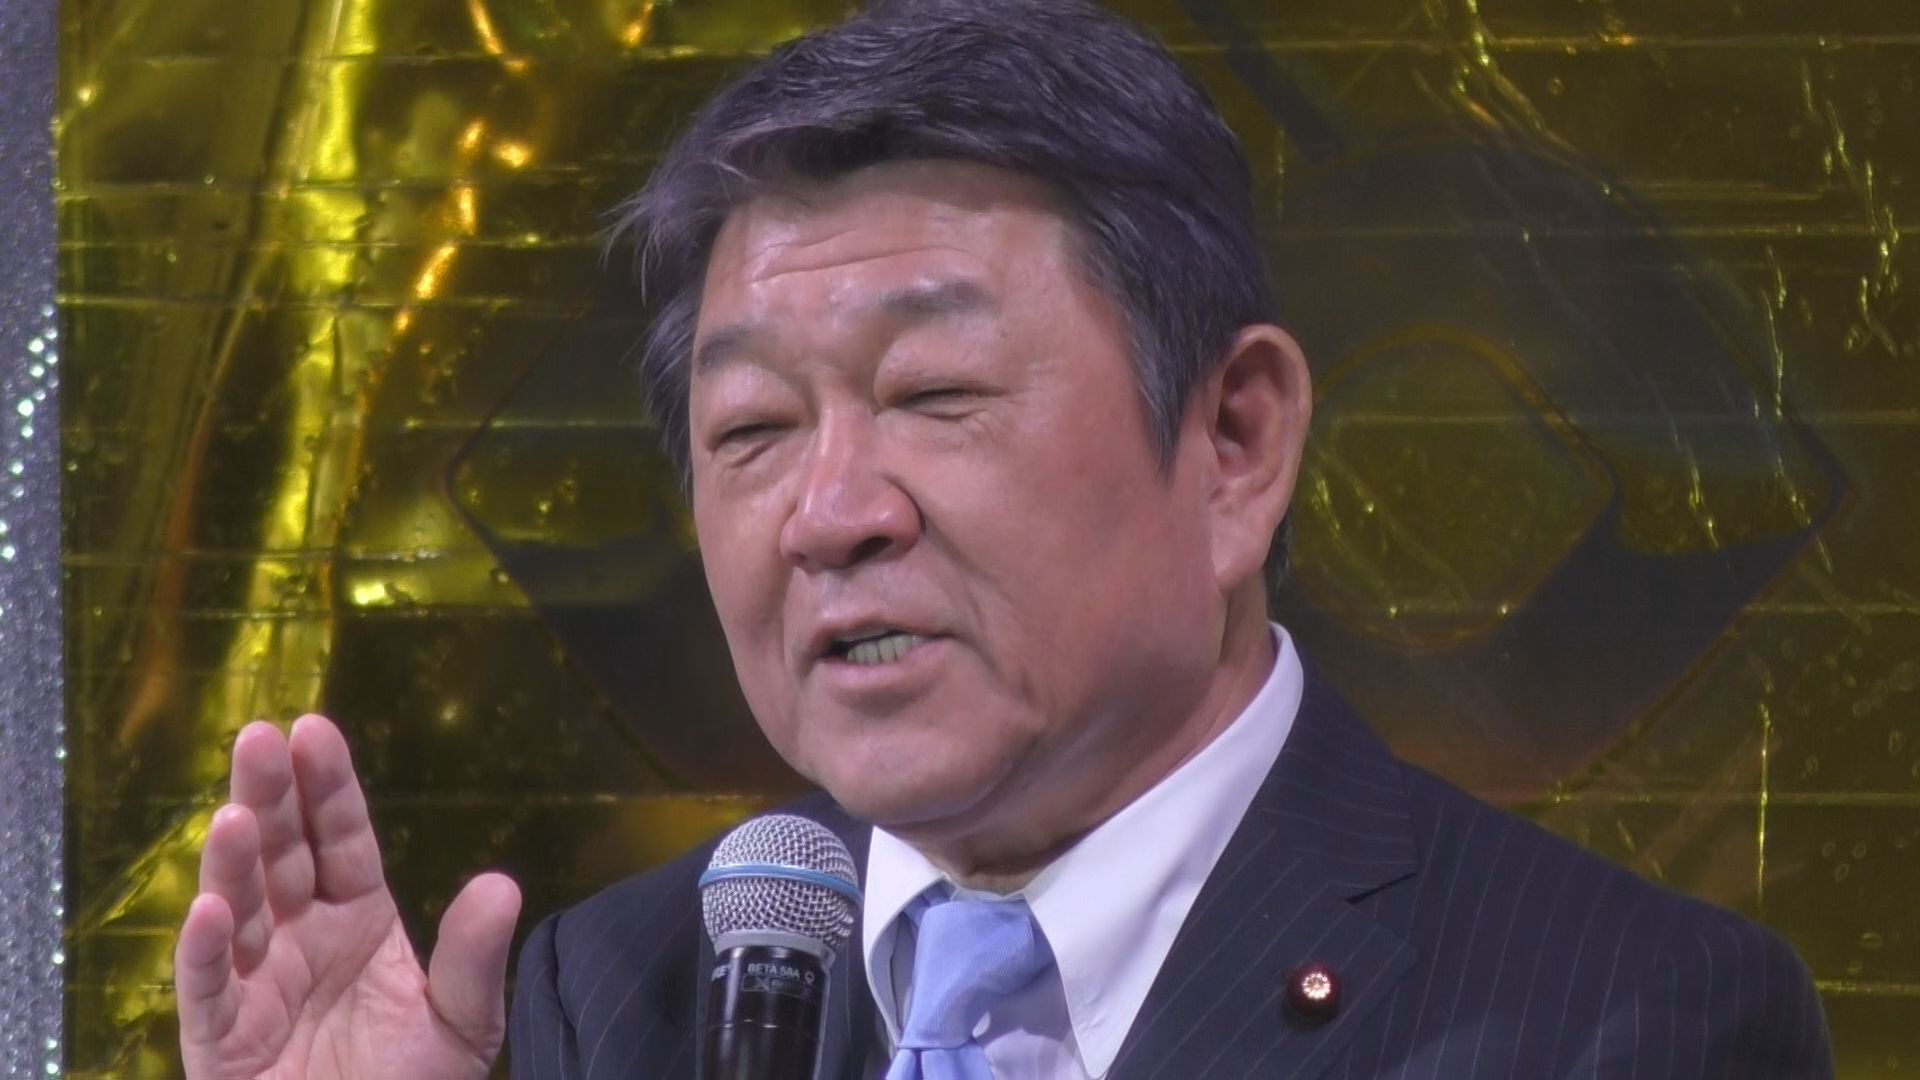 「新NISAのバージョンアップ必要」自民・茂木幹事長、京都のイベントで発言